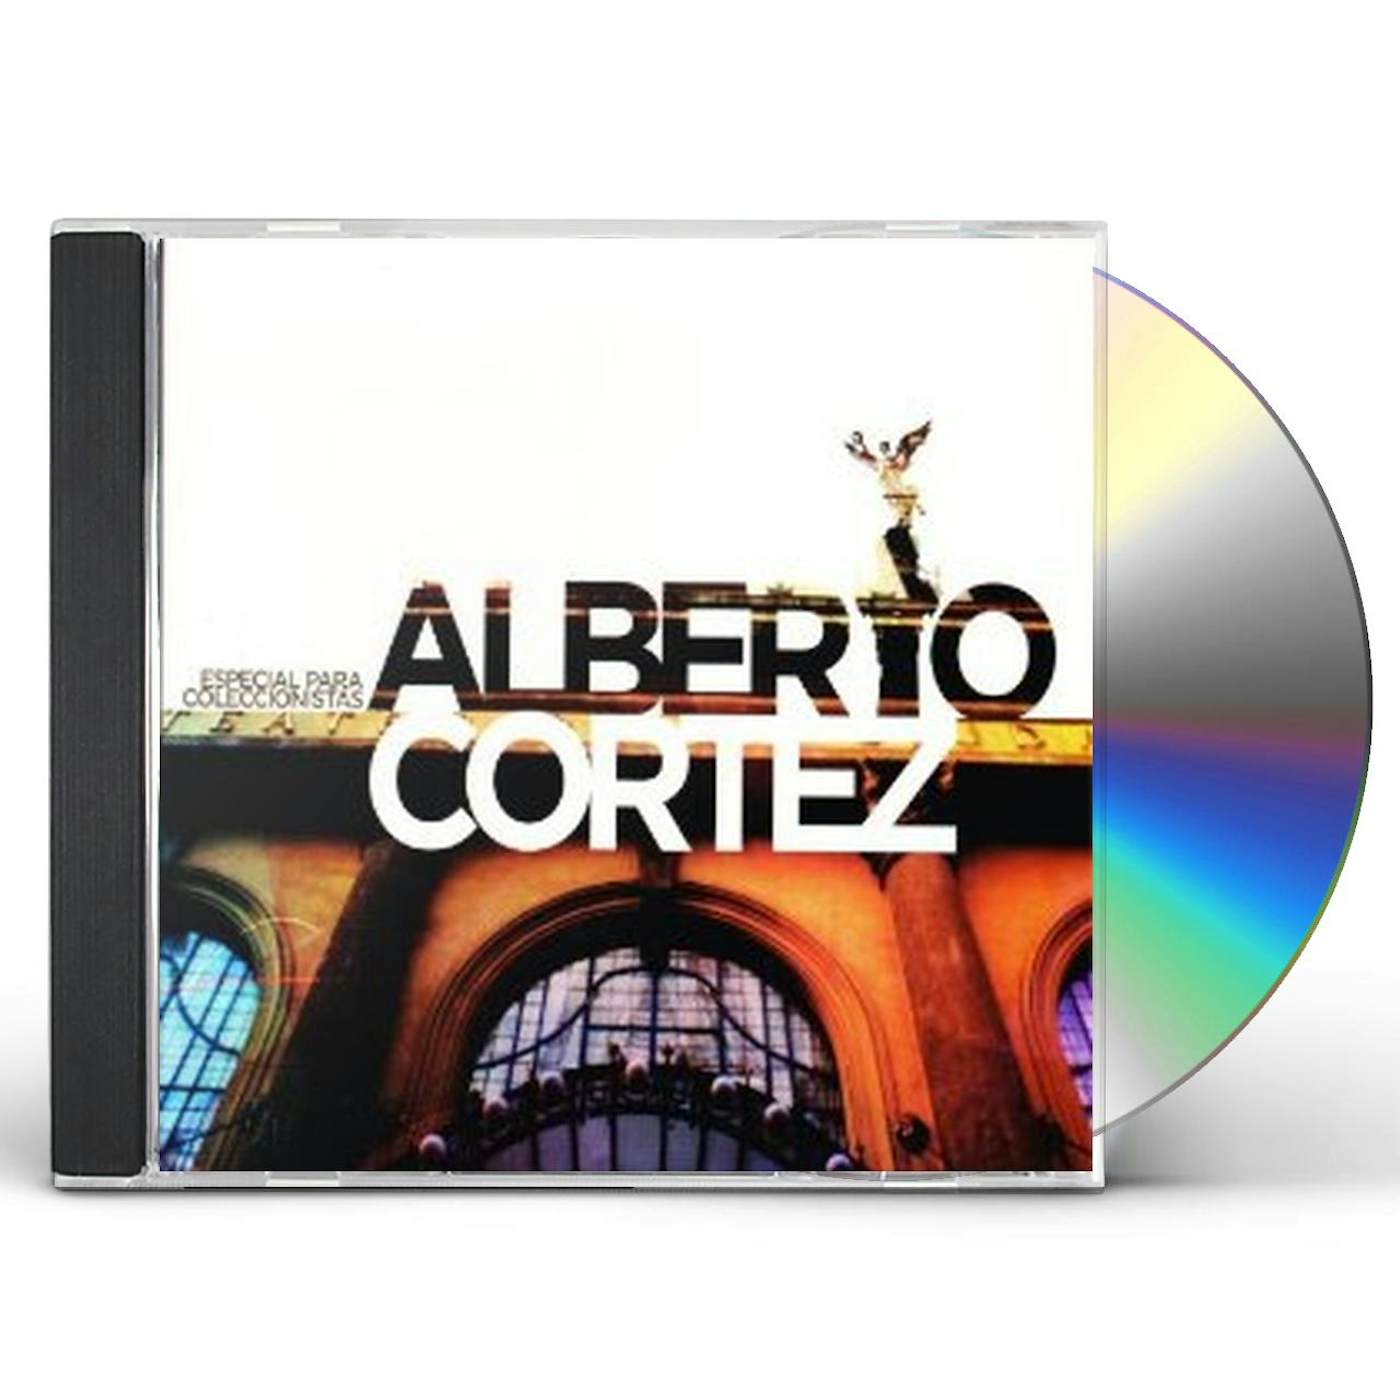 Alberto Cortez ESPECIAL PARA COLECCIONISTAS CD